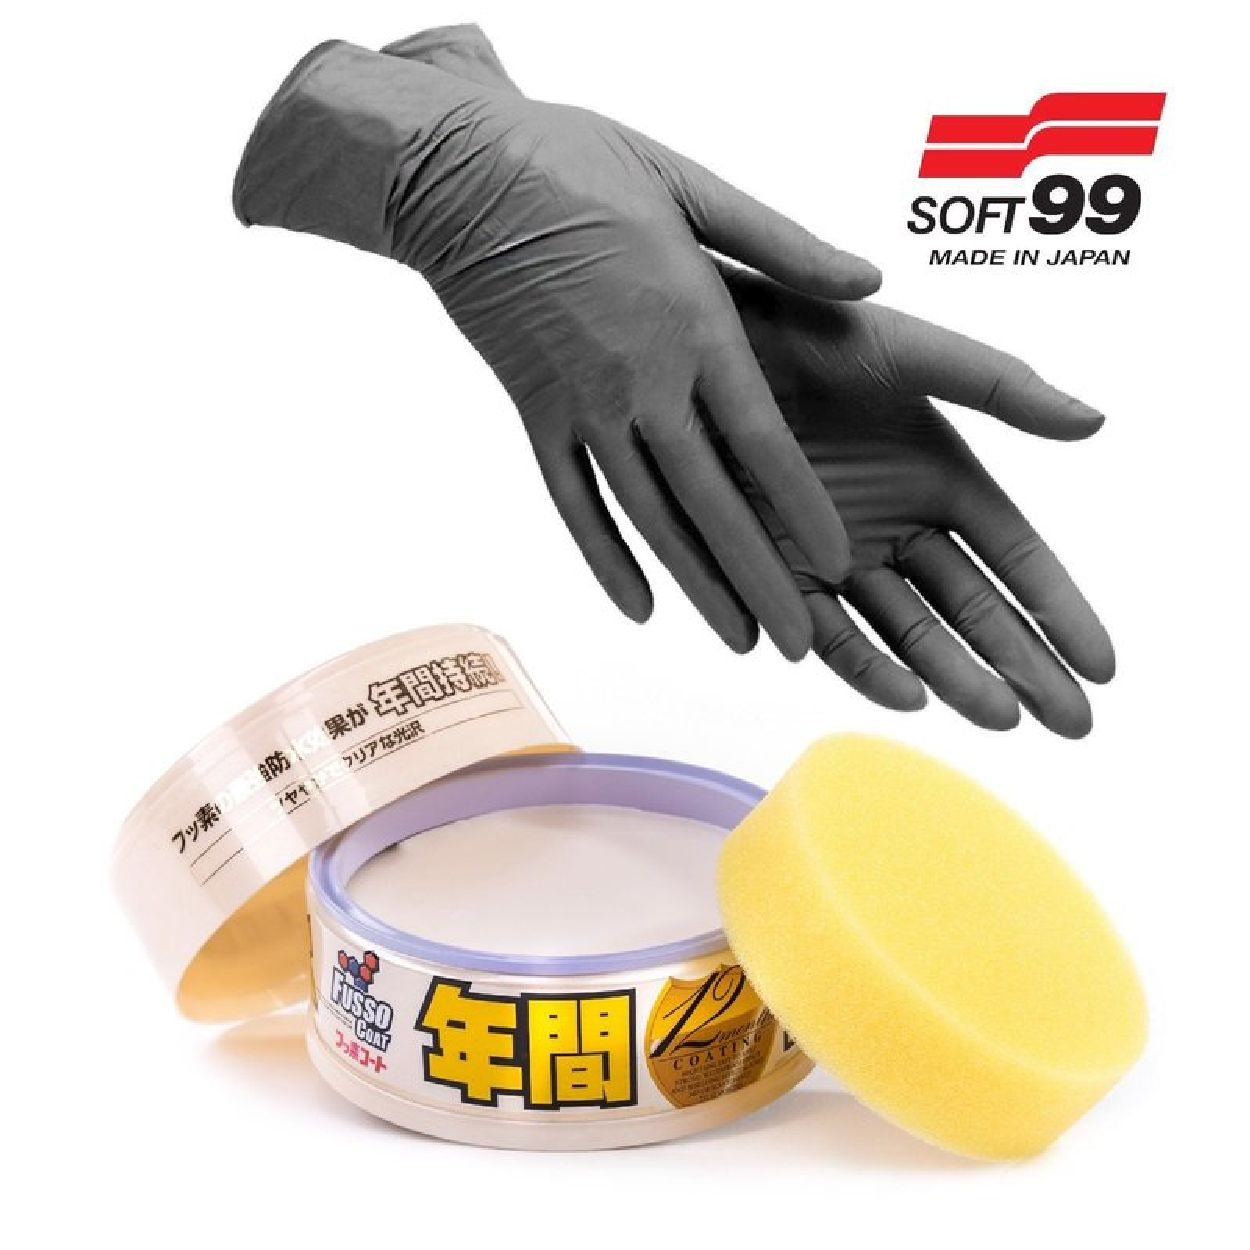 00298 Autopflege, Soft99 INBUSCO Handschuhe-12M Versiegelung + light / KUBIS Transparent